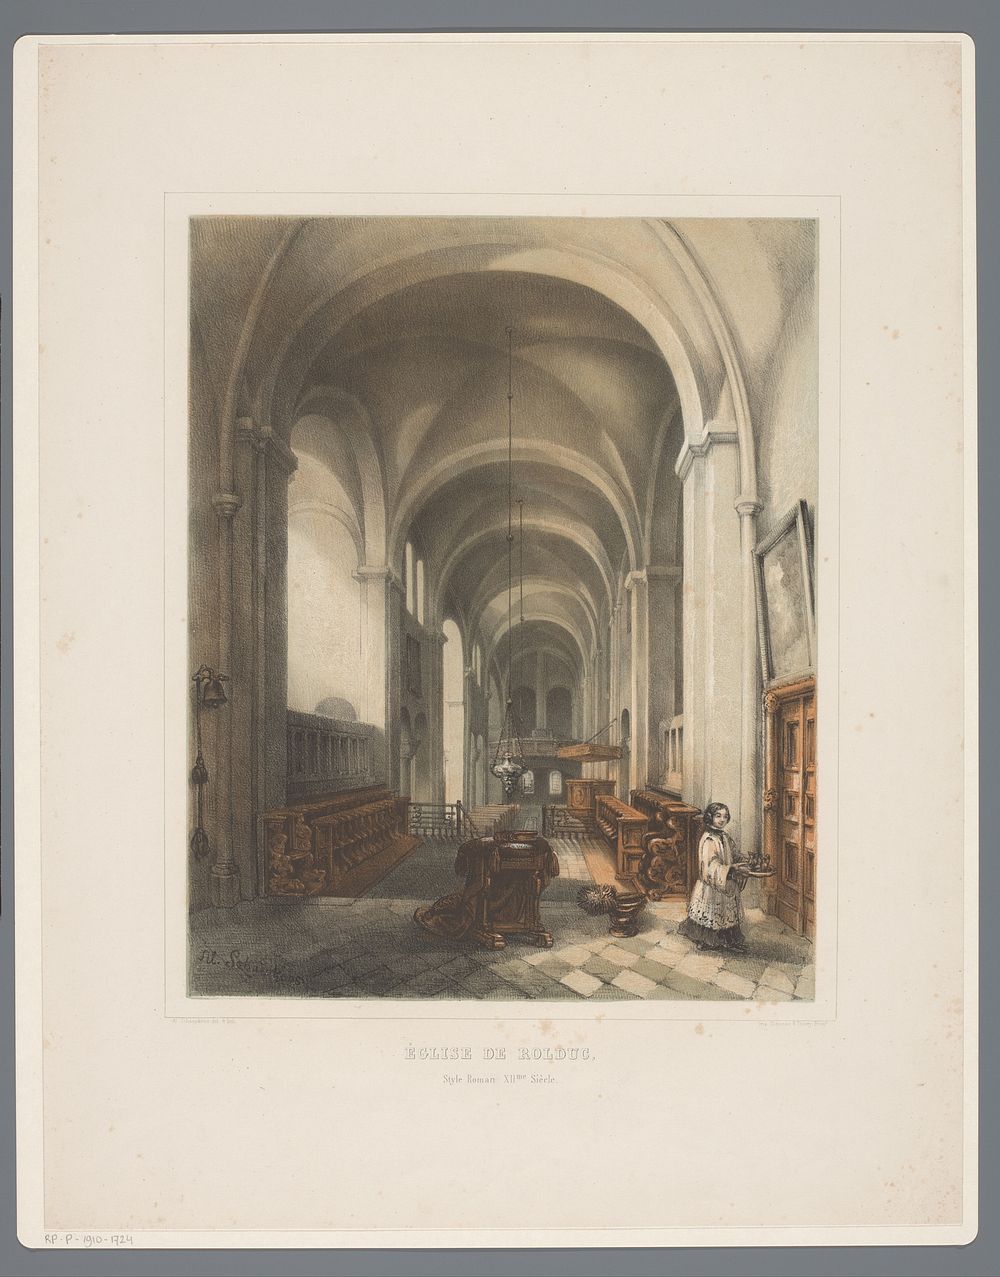 Interieur van Abdijkerk Rolduc (1852) by Alexander Schaepkens, Alexander Schaepkens and Simonau and Toovey